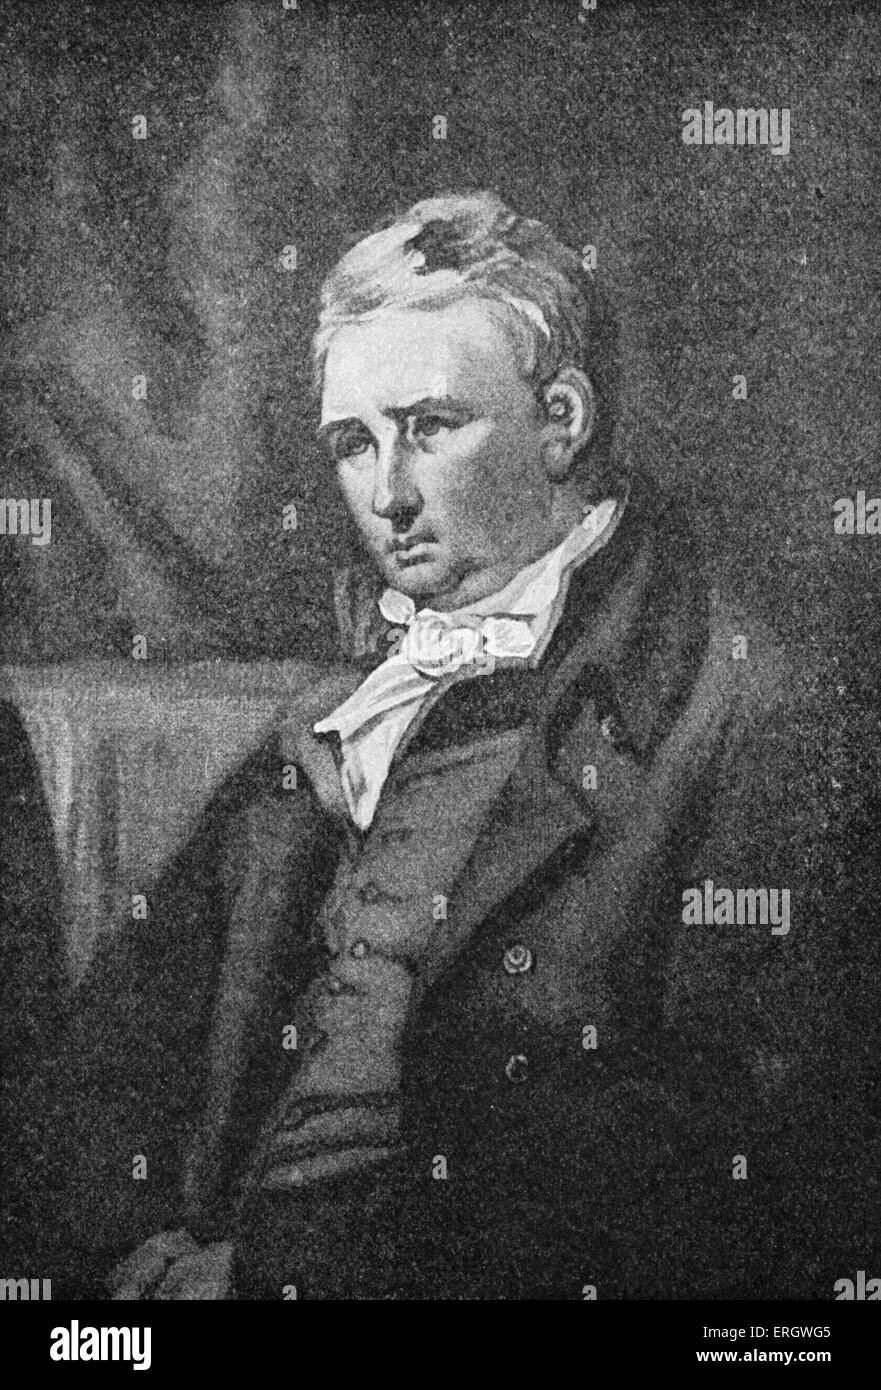 William Cobbett: Englischer Schriftsteller und Journalist, 9. März 1763 – 18. Juni 1835. Kupferstich von Willliam Ward. Stockfoto